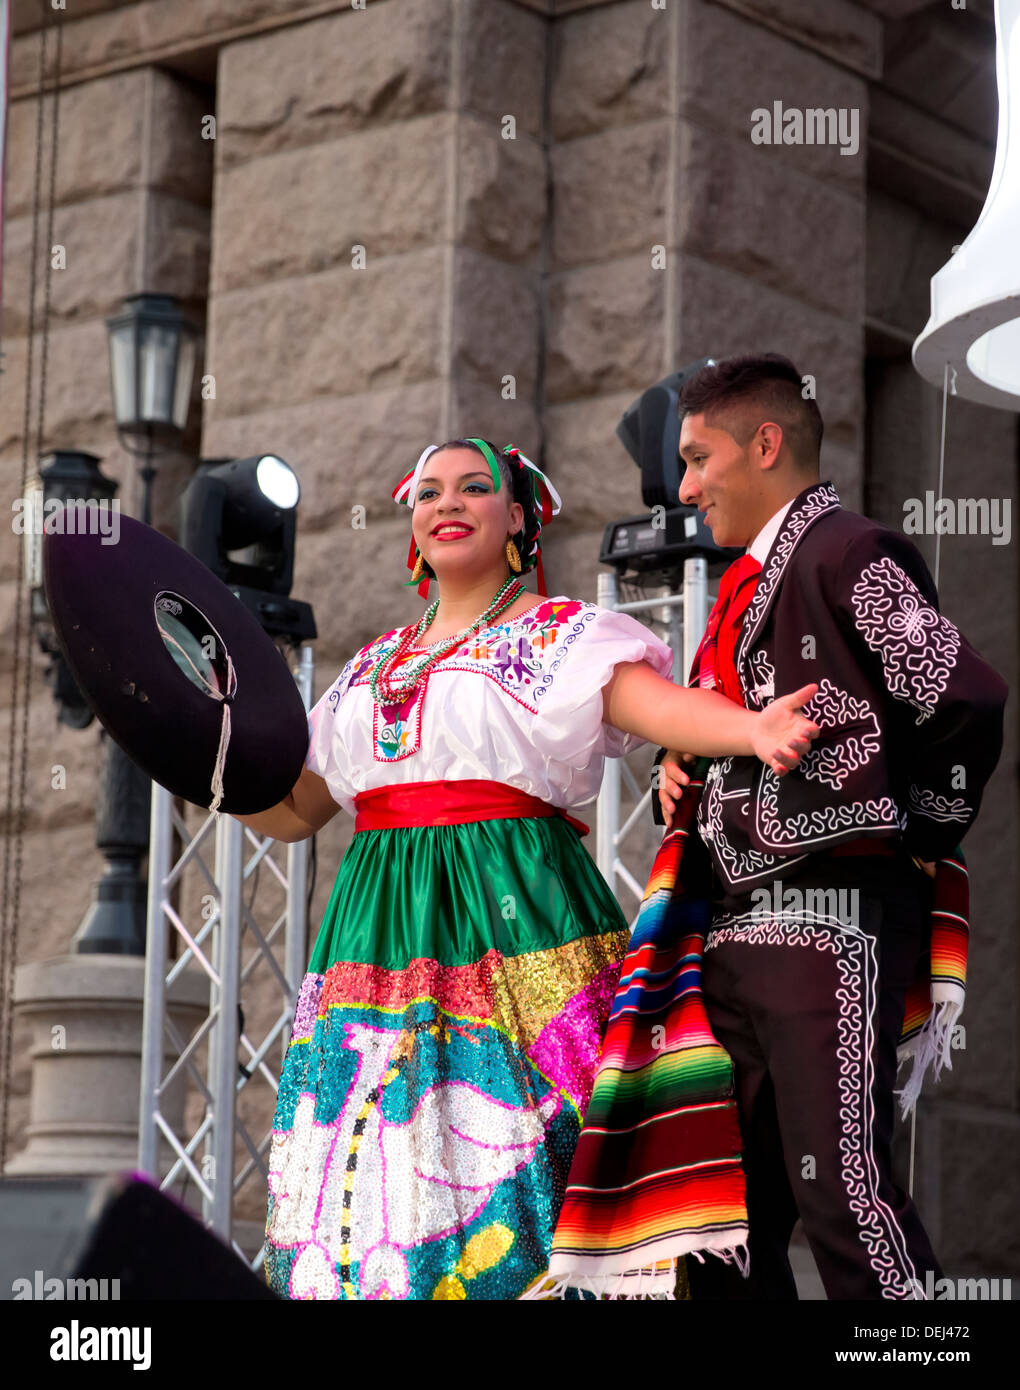 Feier der Unabhängigkeit Mexikos im Capitol in Austin Texas umfasst traditionelle folkloristische Tänze, mexikanischer Hut-Tanz Stockfoto